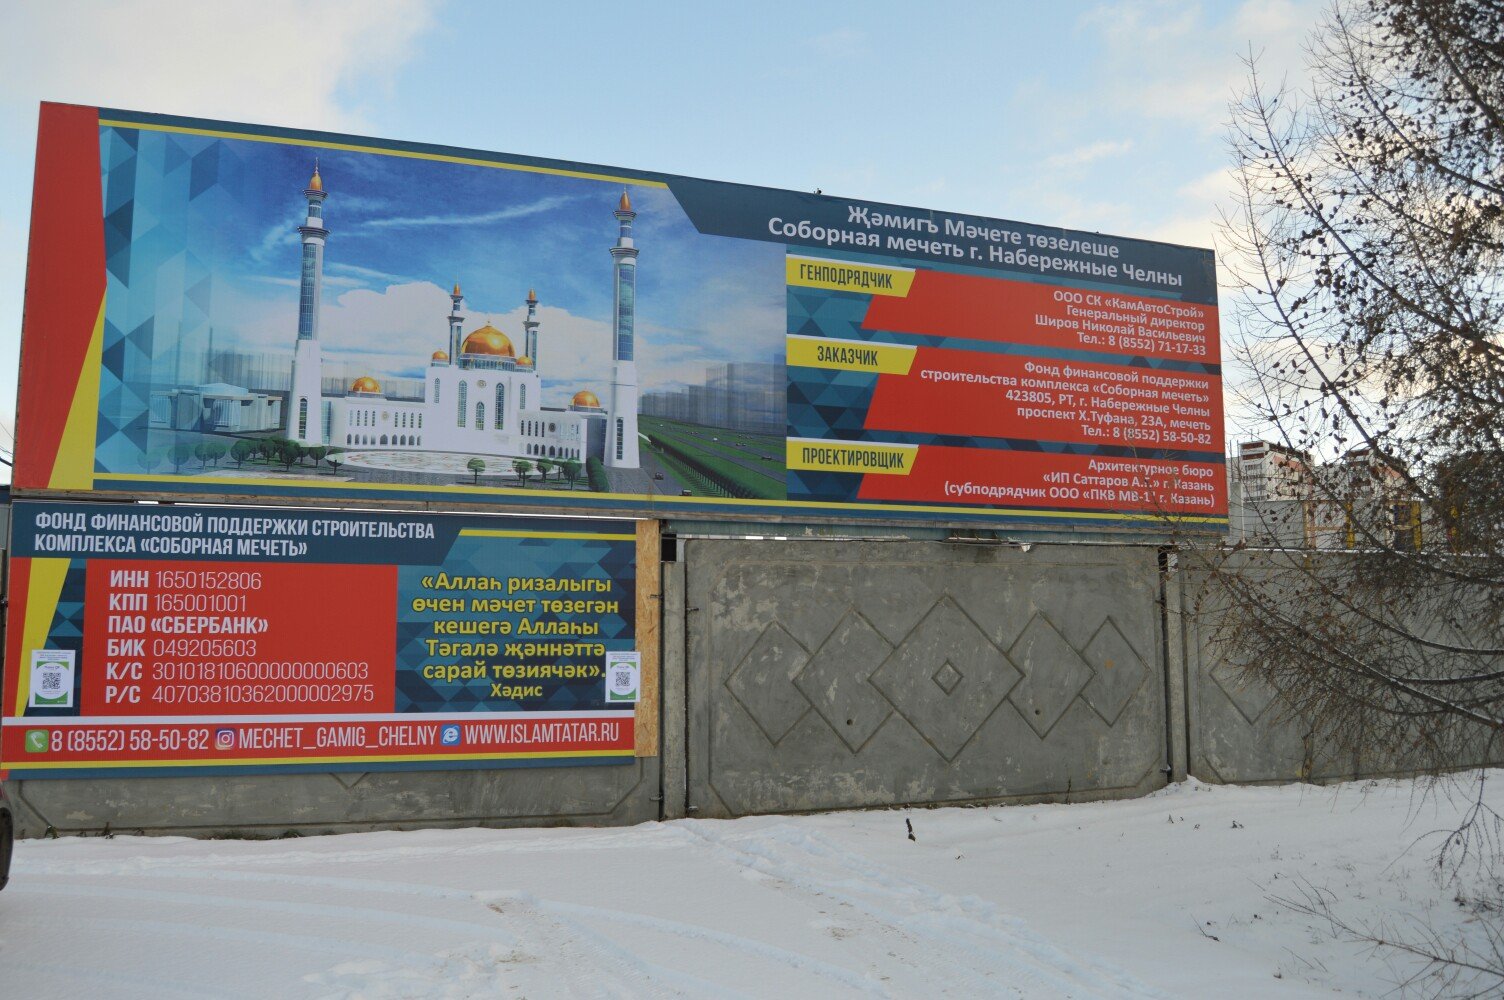 Каркас соборной мечети «Джамиг» обойдется в 244 млн рублей